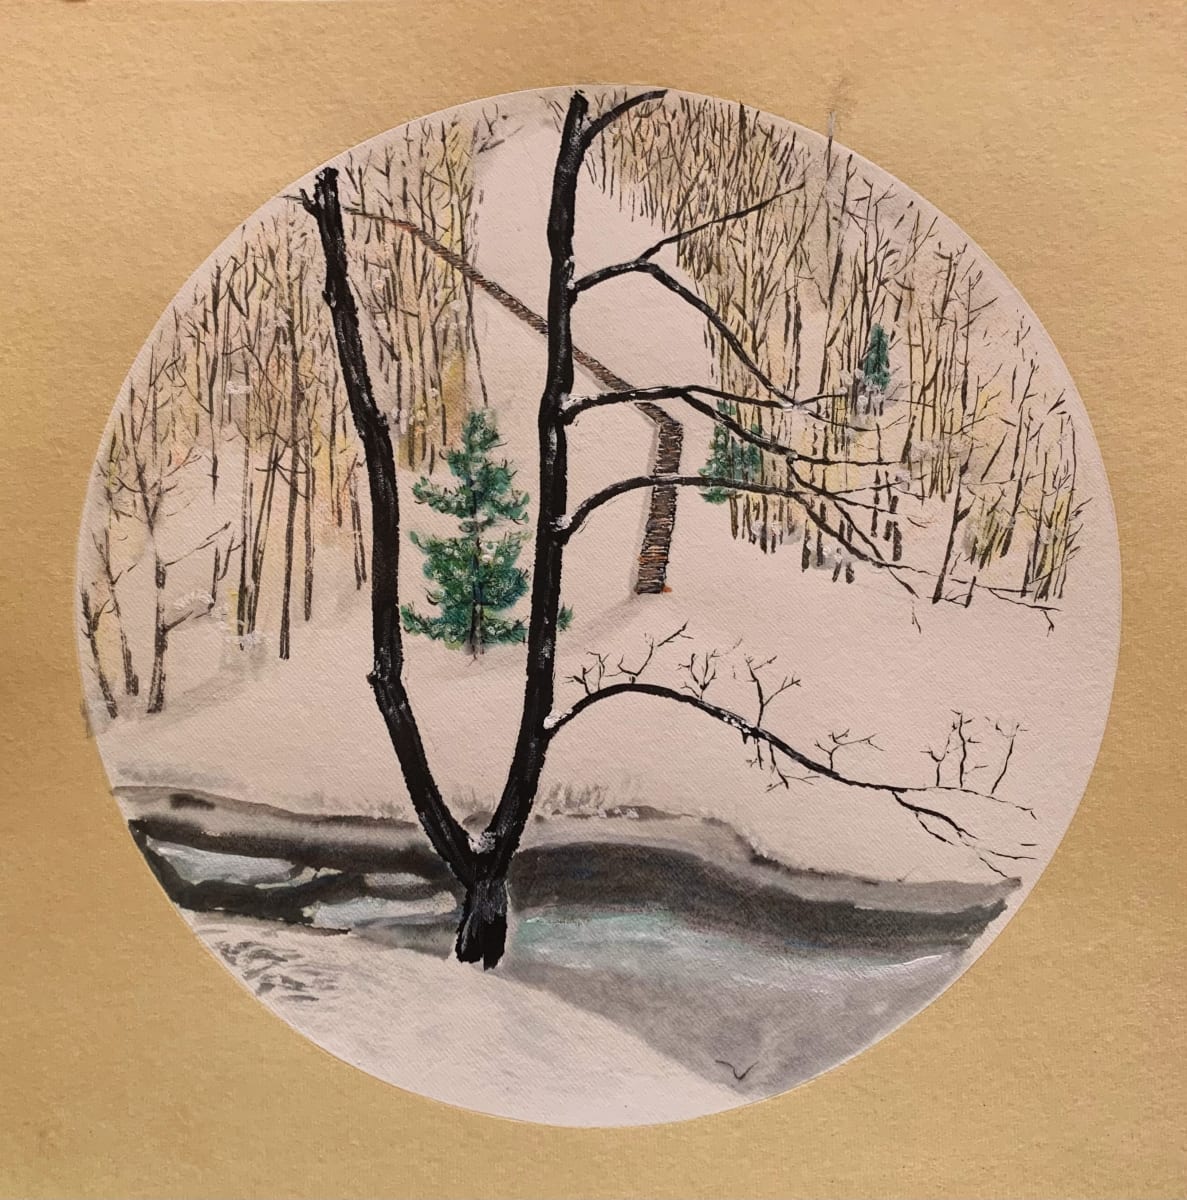 Žiemos apmąstymai / Winter reflections by Ina Loreta Savickiene 